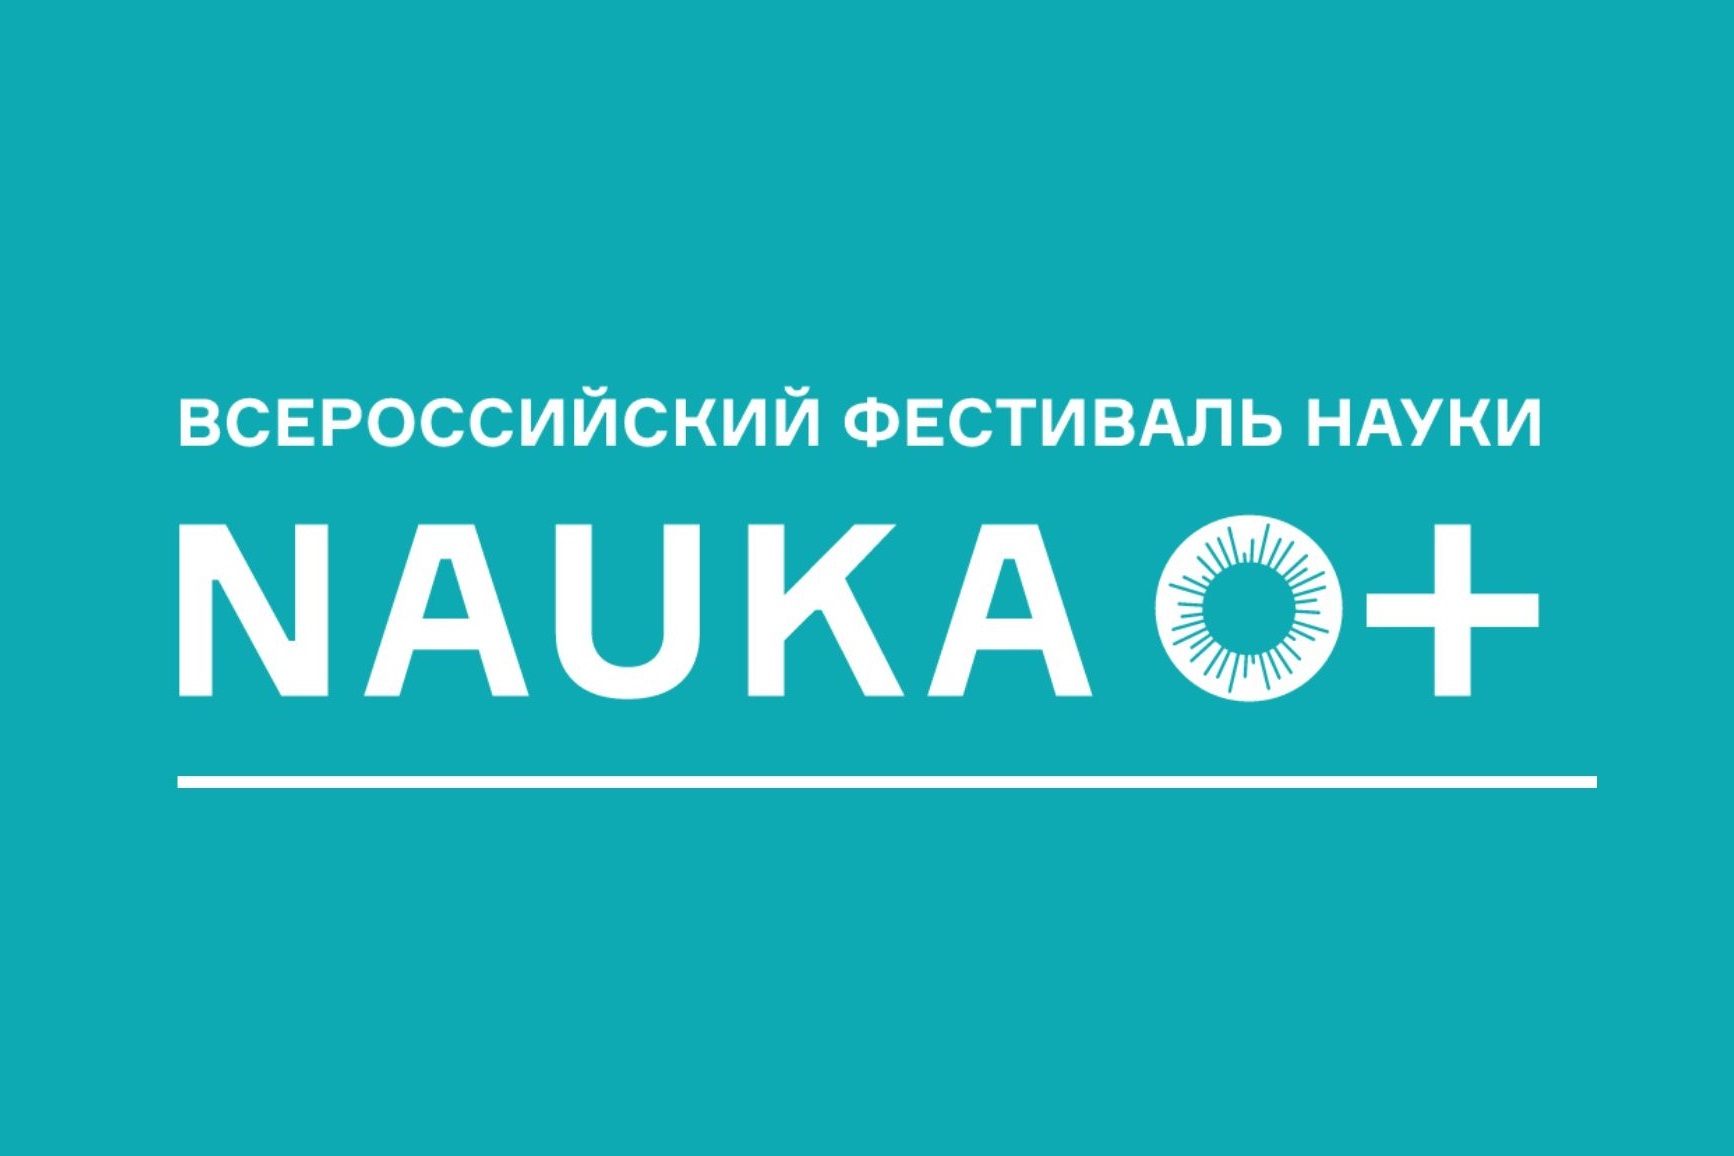 Всероссийский фестиваль науки «NAUKA 0+ 